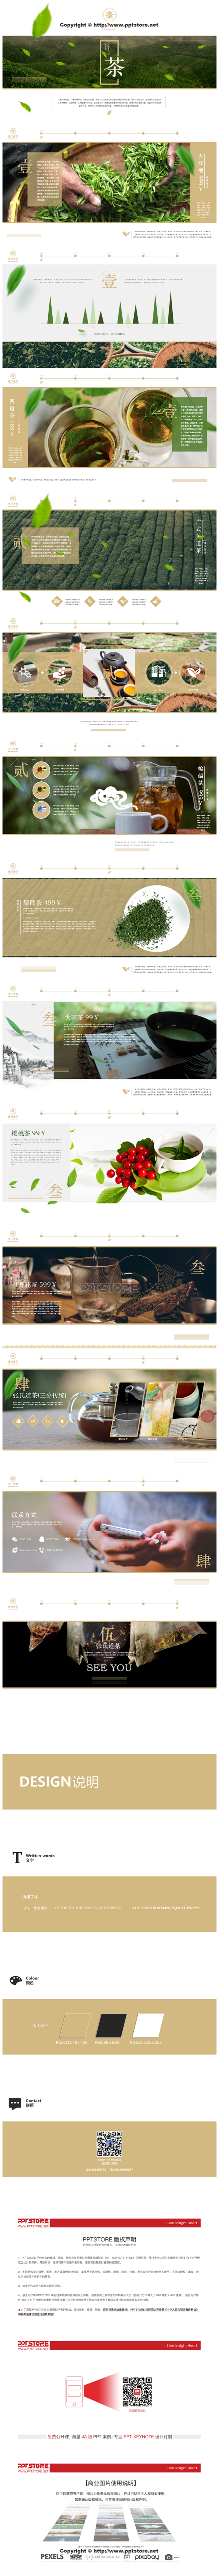 茶叶产品PPT展示模板